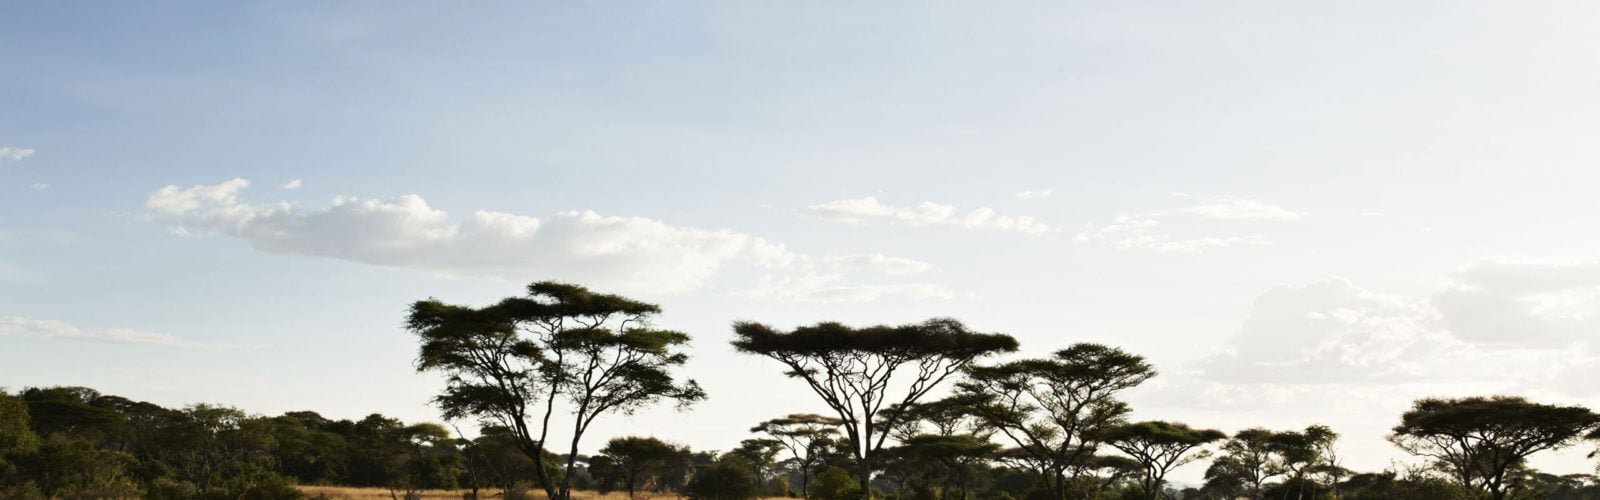 Singita Faru Faru, Singita Grumeti, Tanzania